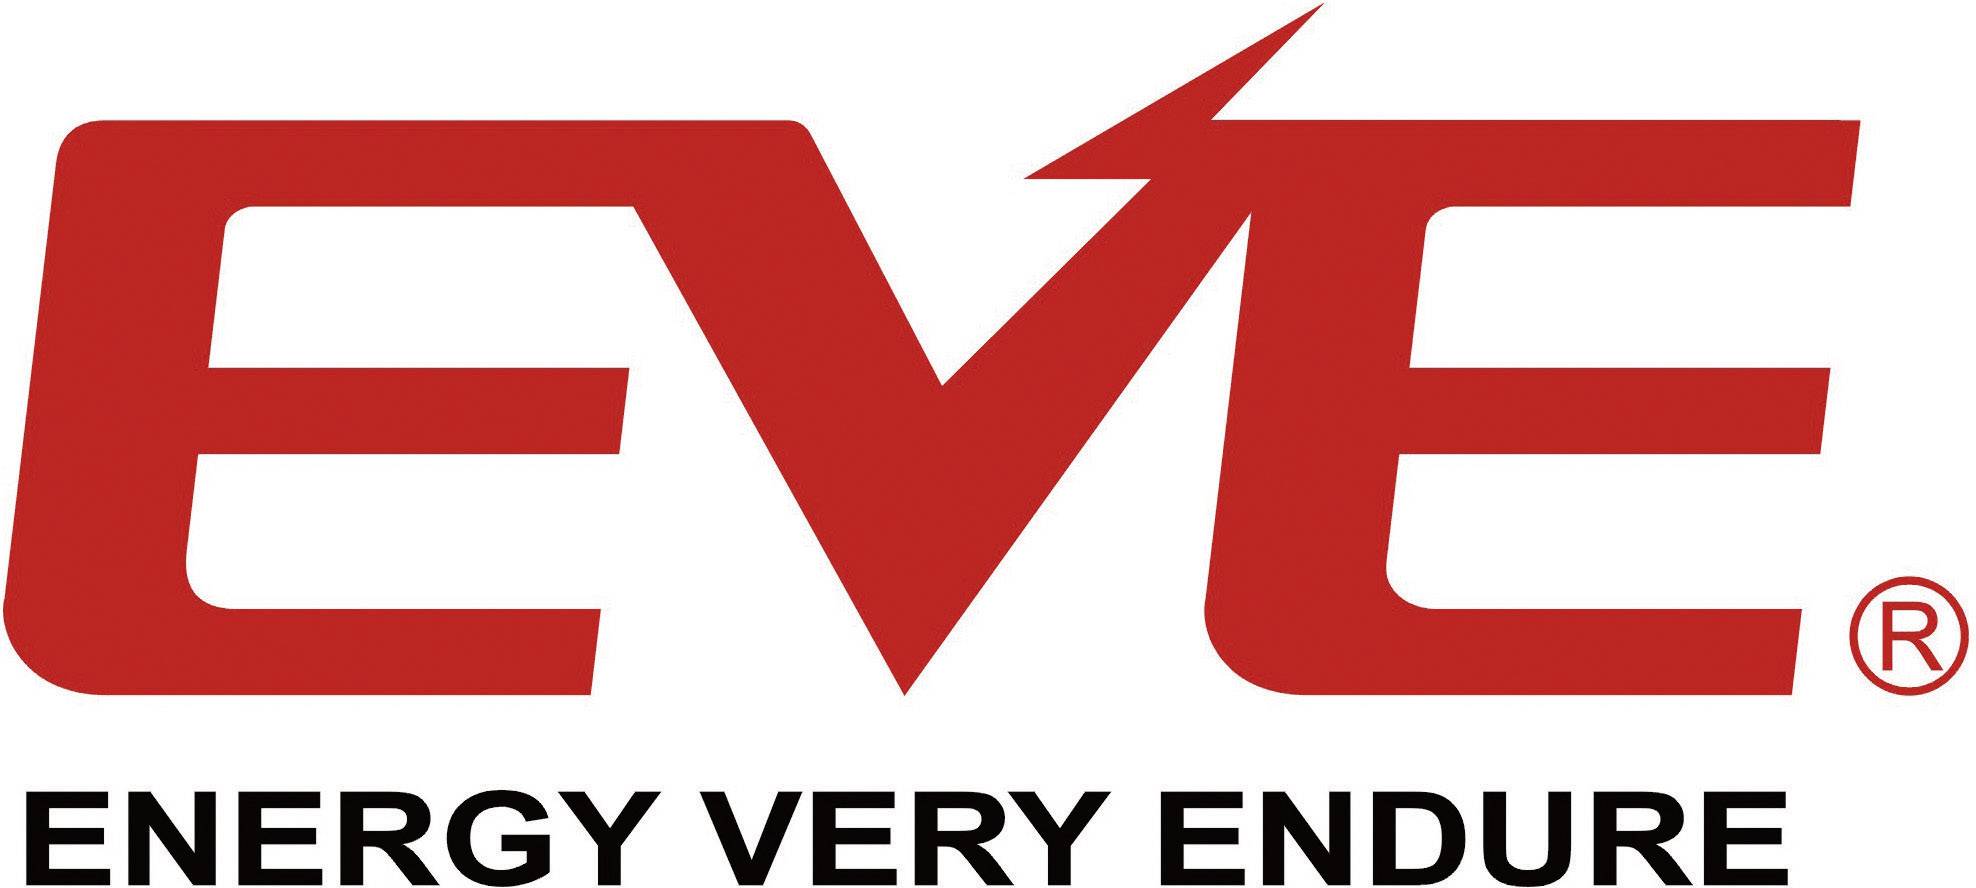 Eve energy